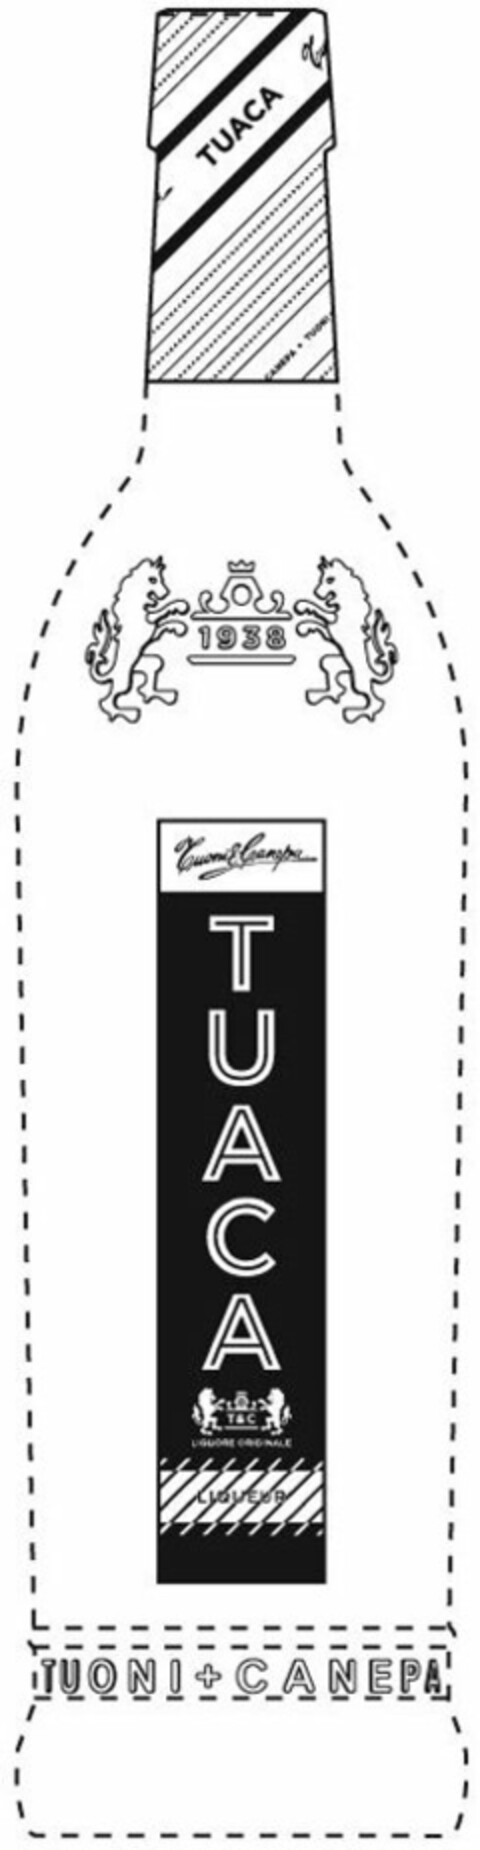 TUACA, TUONI & CANEPA, 1938, LIQUORE ORIGINALE, LIQUEUR Logo (USPTO, 04/06/2010)